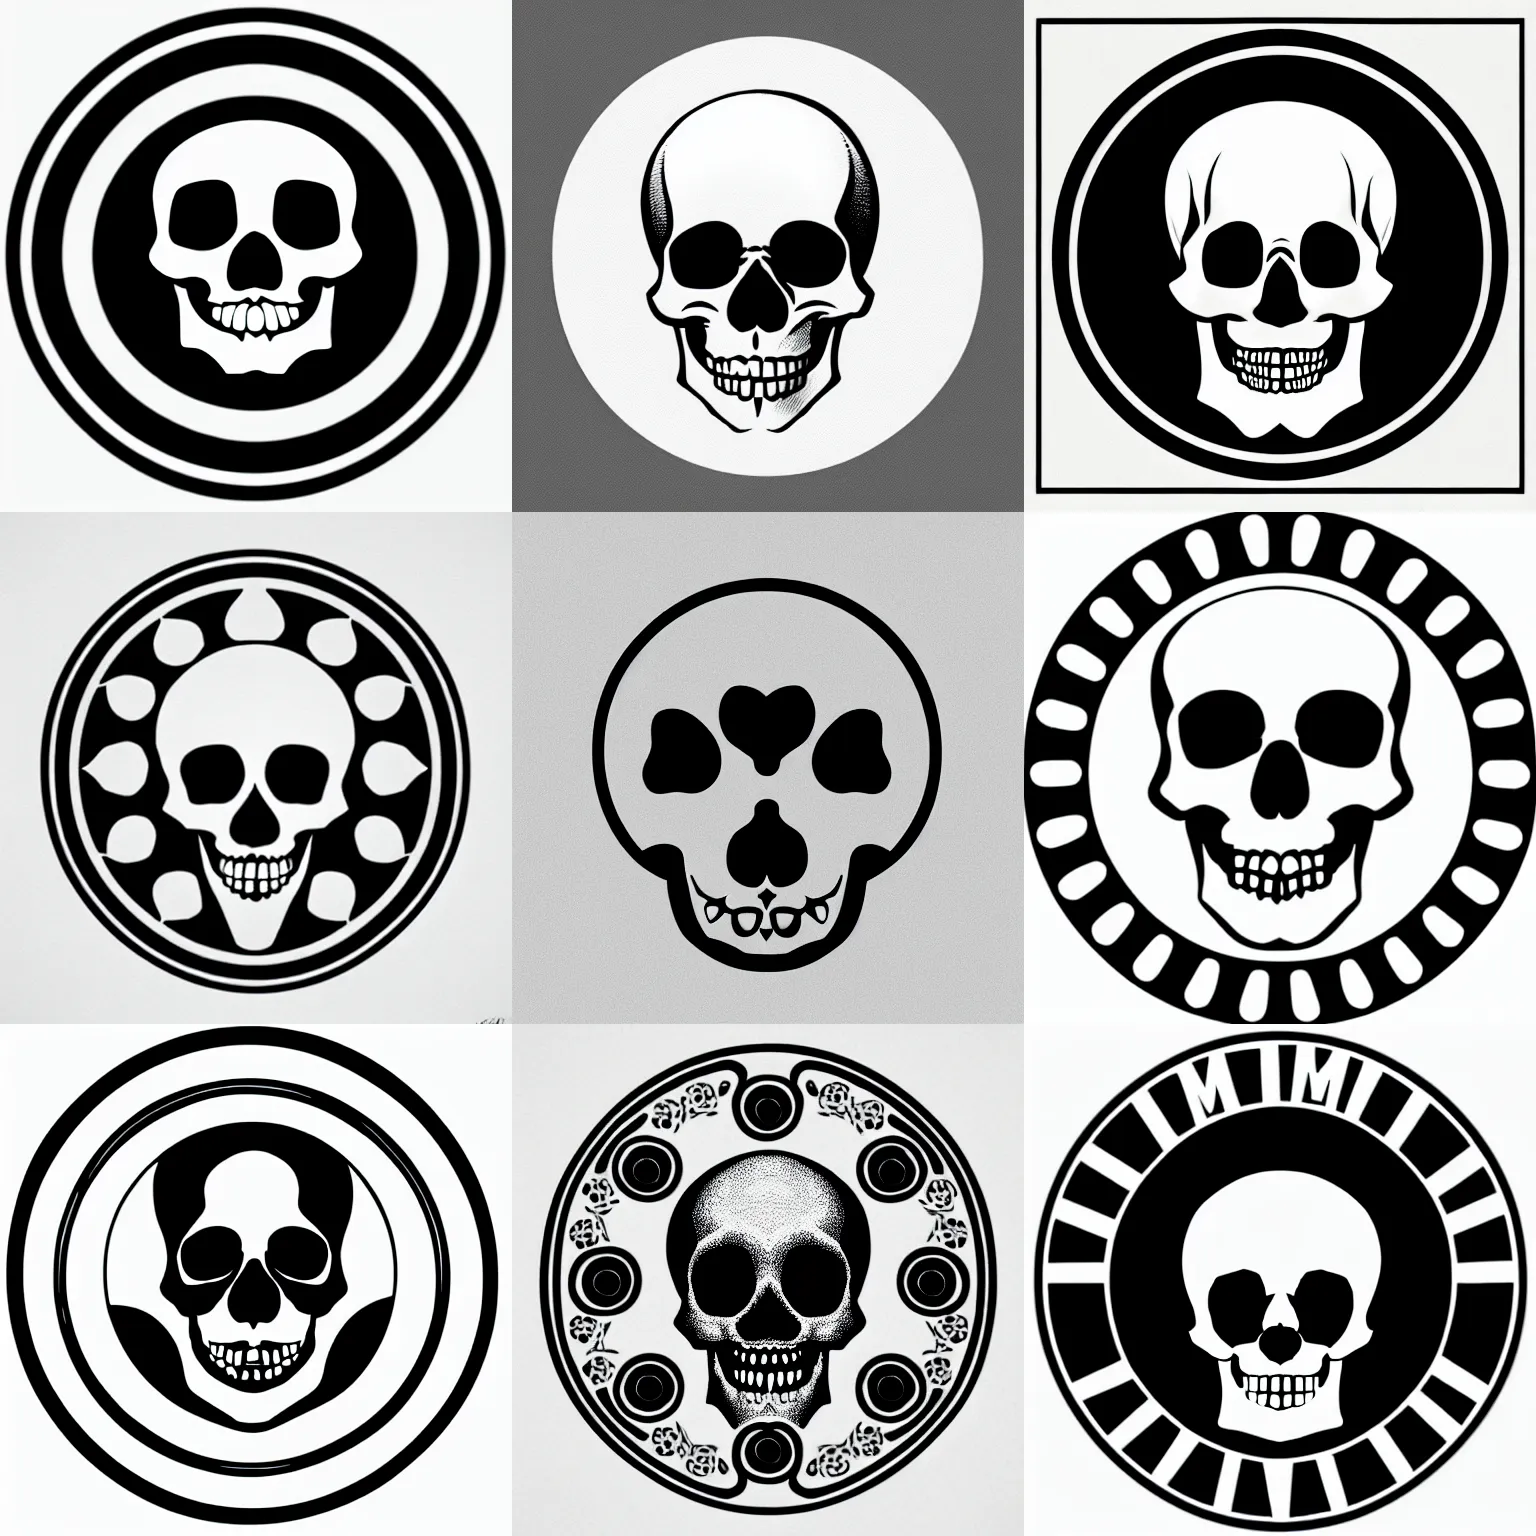 Prompt: memento mori skull logo by karl gerstner, monochrome, symmetrical